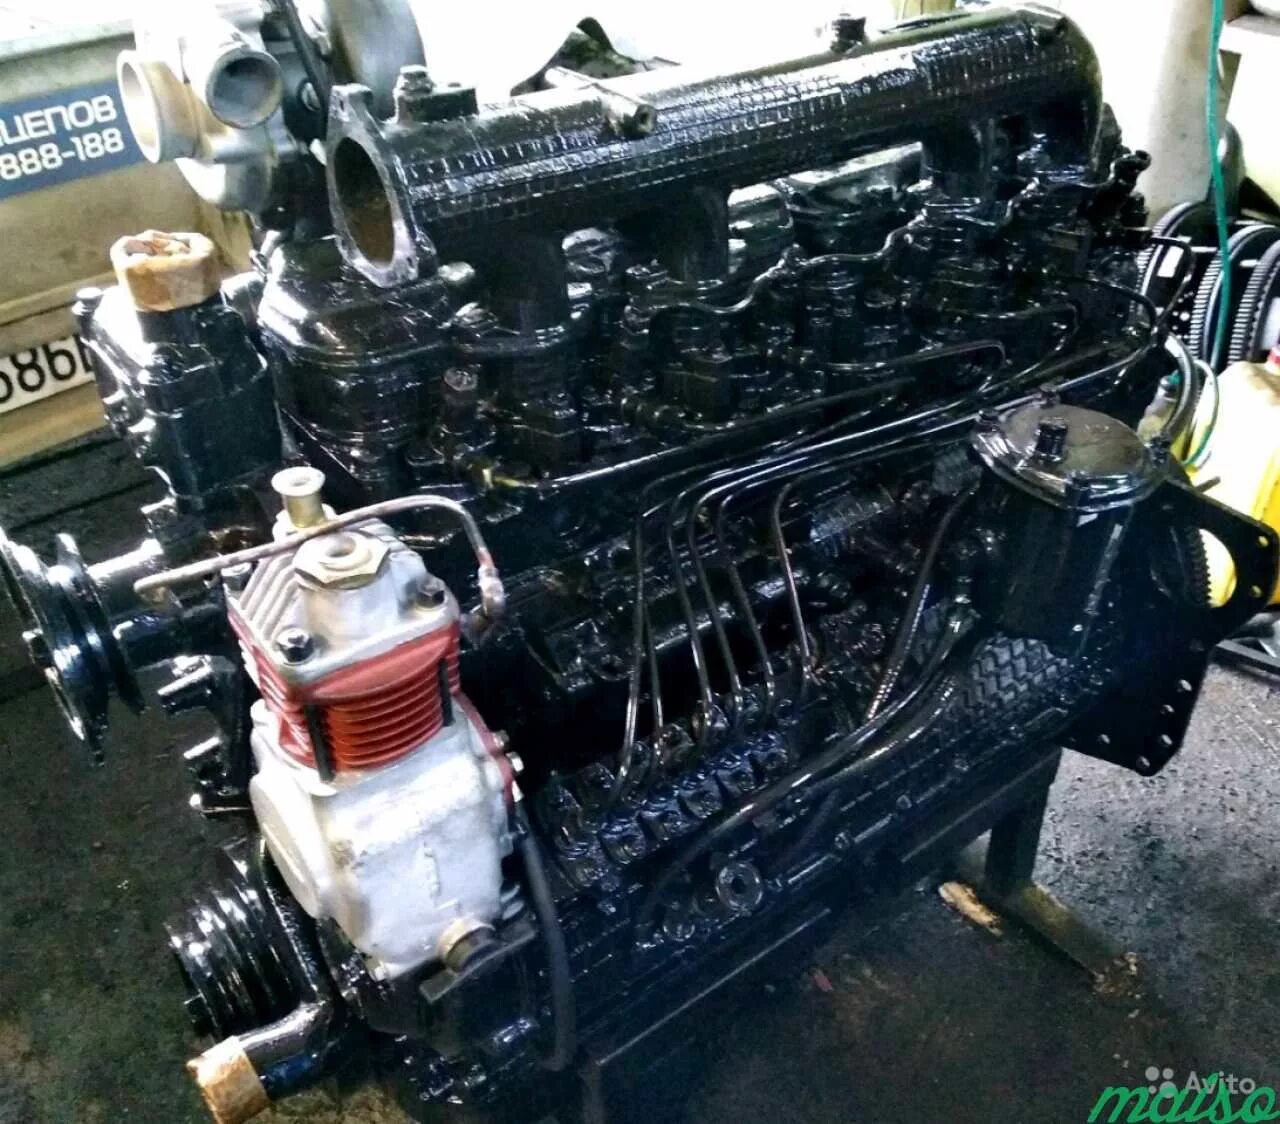 Двигатели мтз д 260. Трактор с двигателем ММЗ Д-260. ММЗ 260 двигатель. МТЗ д260 ДВС. Мотор МТЗ 260.